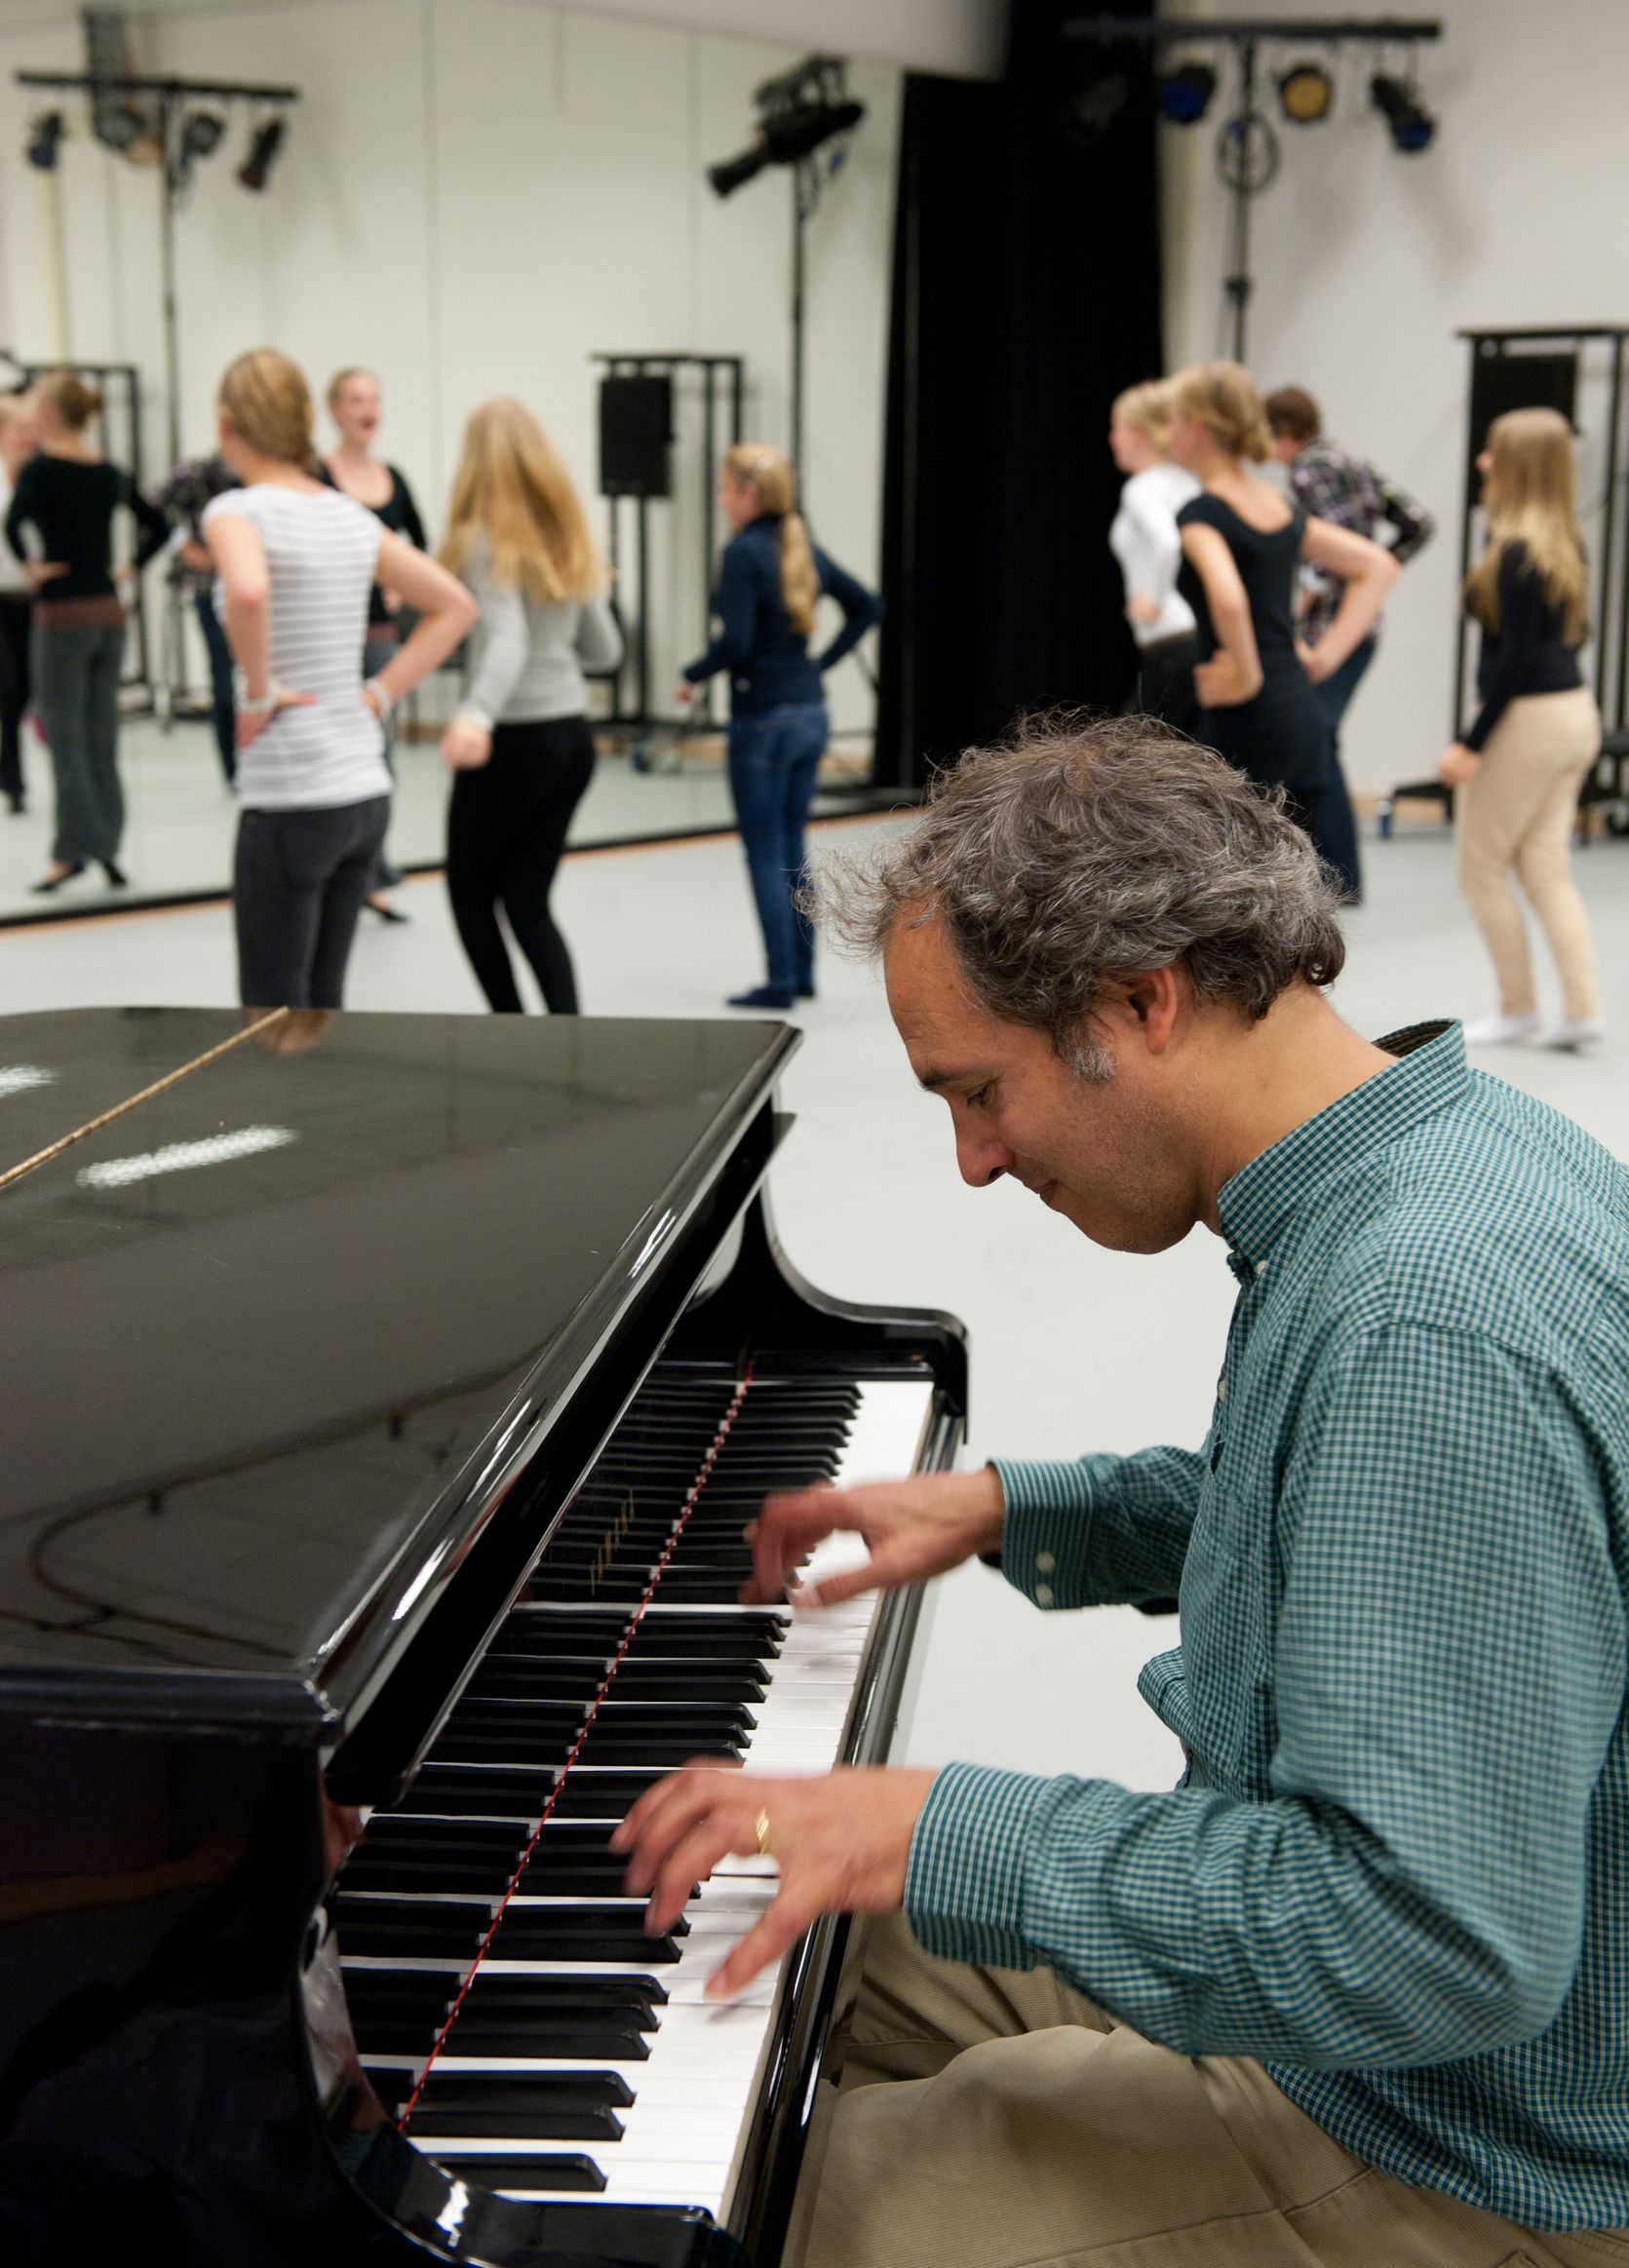 Een pianist speelt terwijl op de achtergrond leerlingen voor een spiegel dansen